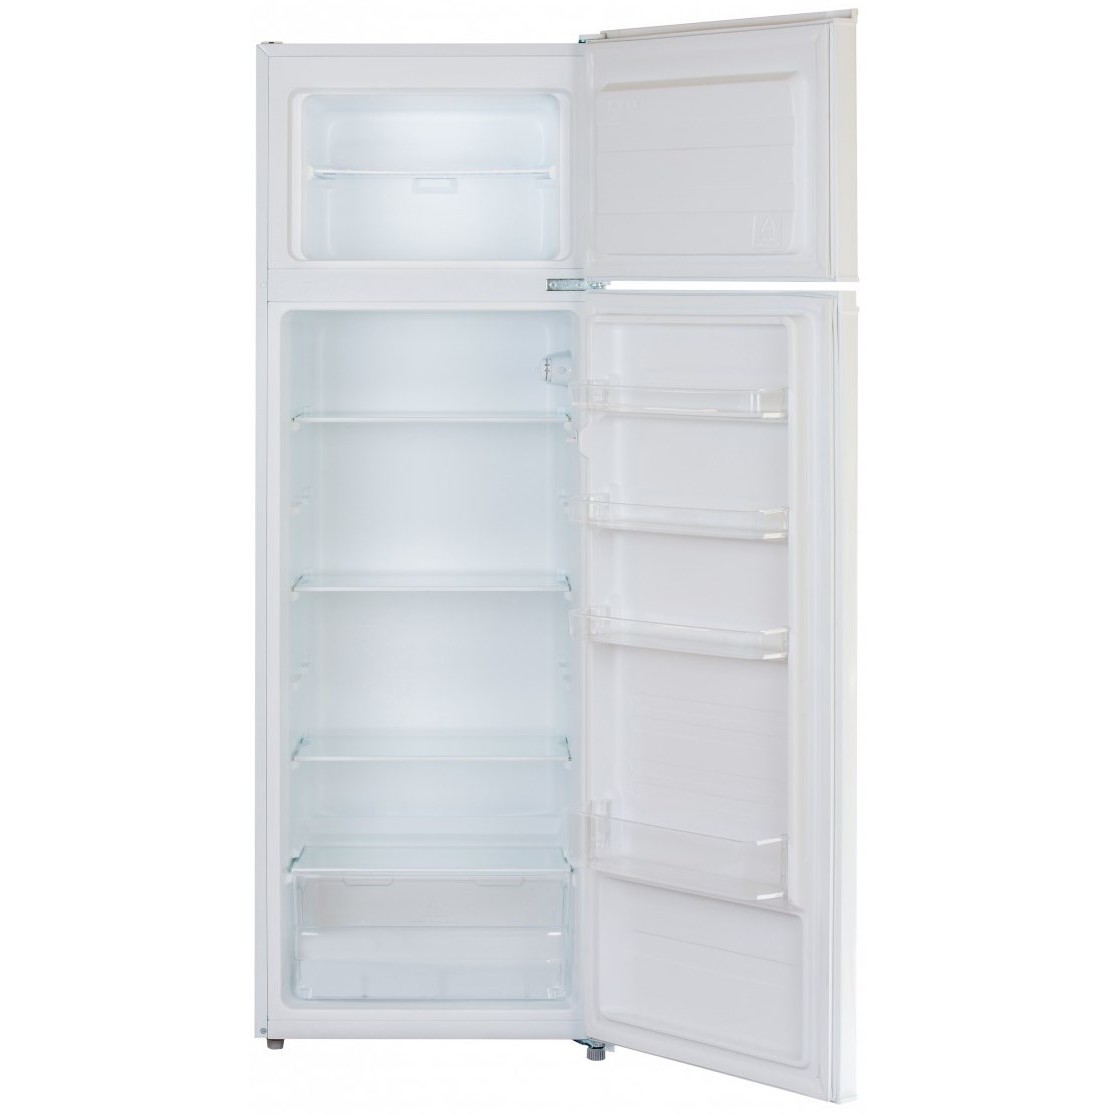 Холодильник с морозильником dexp rf. Холодильник DEXP RF-td160nma/w. Холодильник с морозильником DEXP RF-td160nma/w белый. Холодильник DEXP RF td 160. Холодильник с морозильником DEXP RF-td160nma.